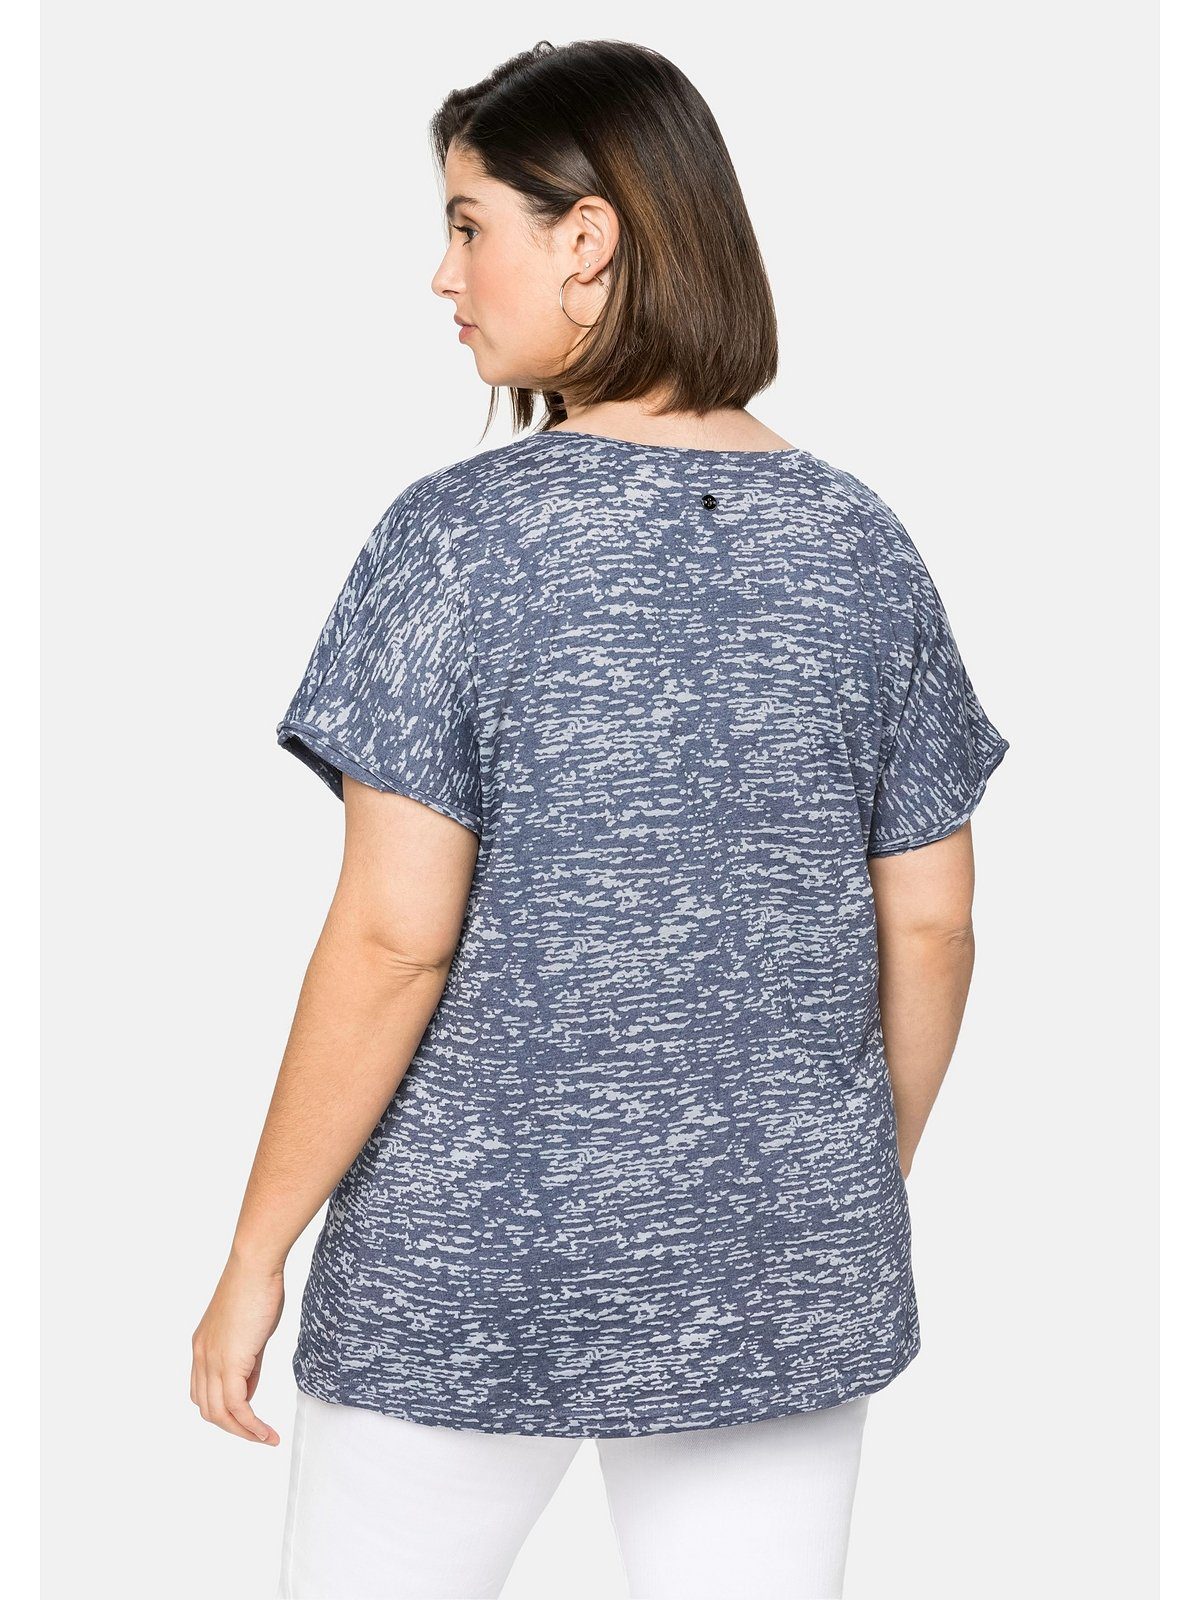 Sheego T-Shirt Große Größen mit leicht marine Ausbrennermuster, transparent